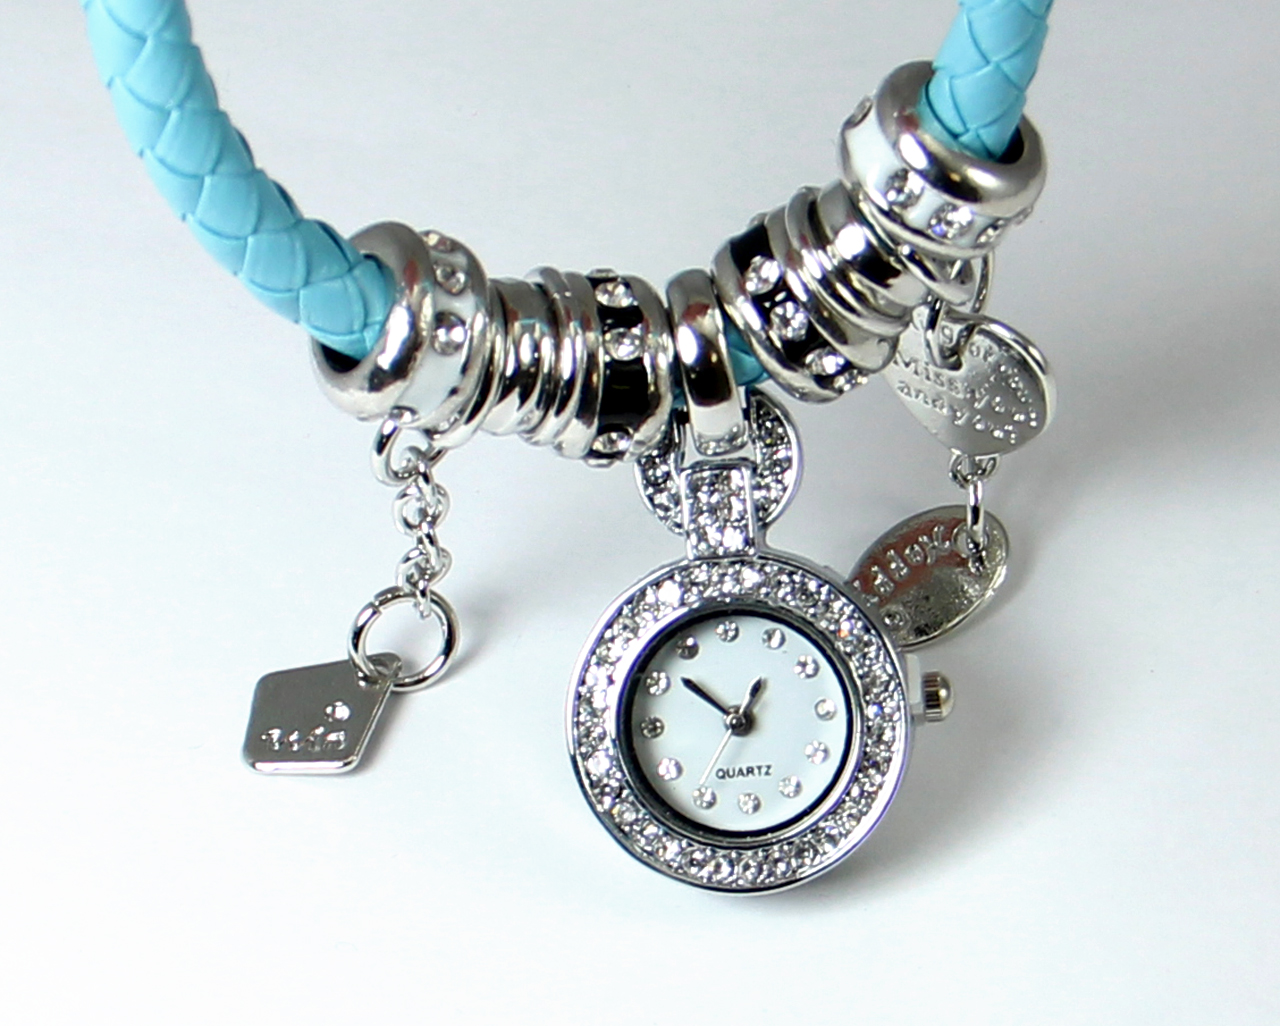 Часы браслеты пандора. Часы с браслетом Пандора. Часы с шармами на браслете. Шарм часы Пандора. Серебряные часы браслет с шармами.